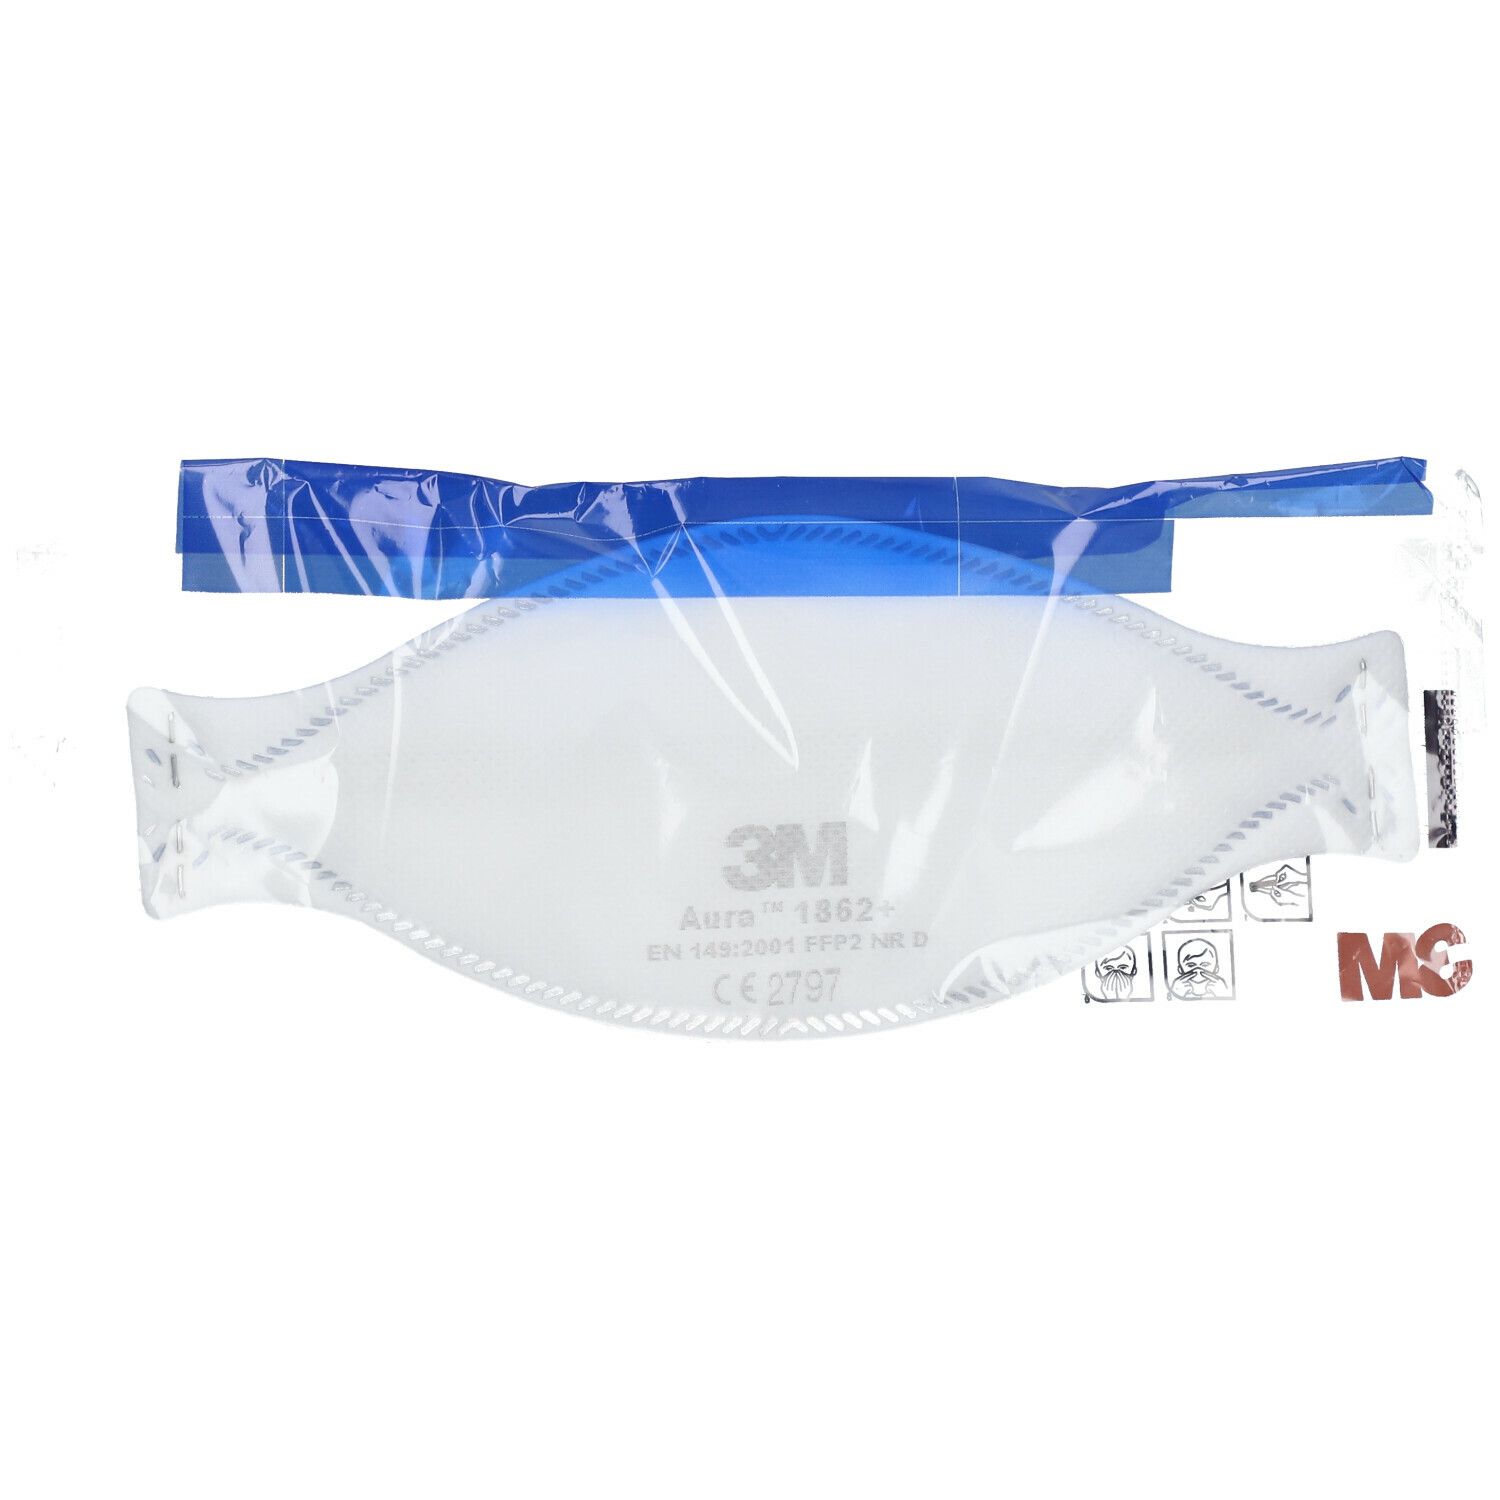 3M™ Masques de protection respiratoire Ffp2 sans valve 1862+ 20 pces